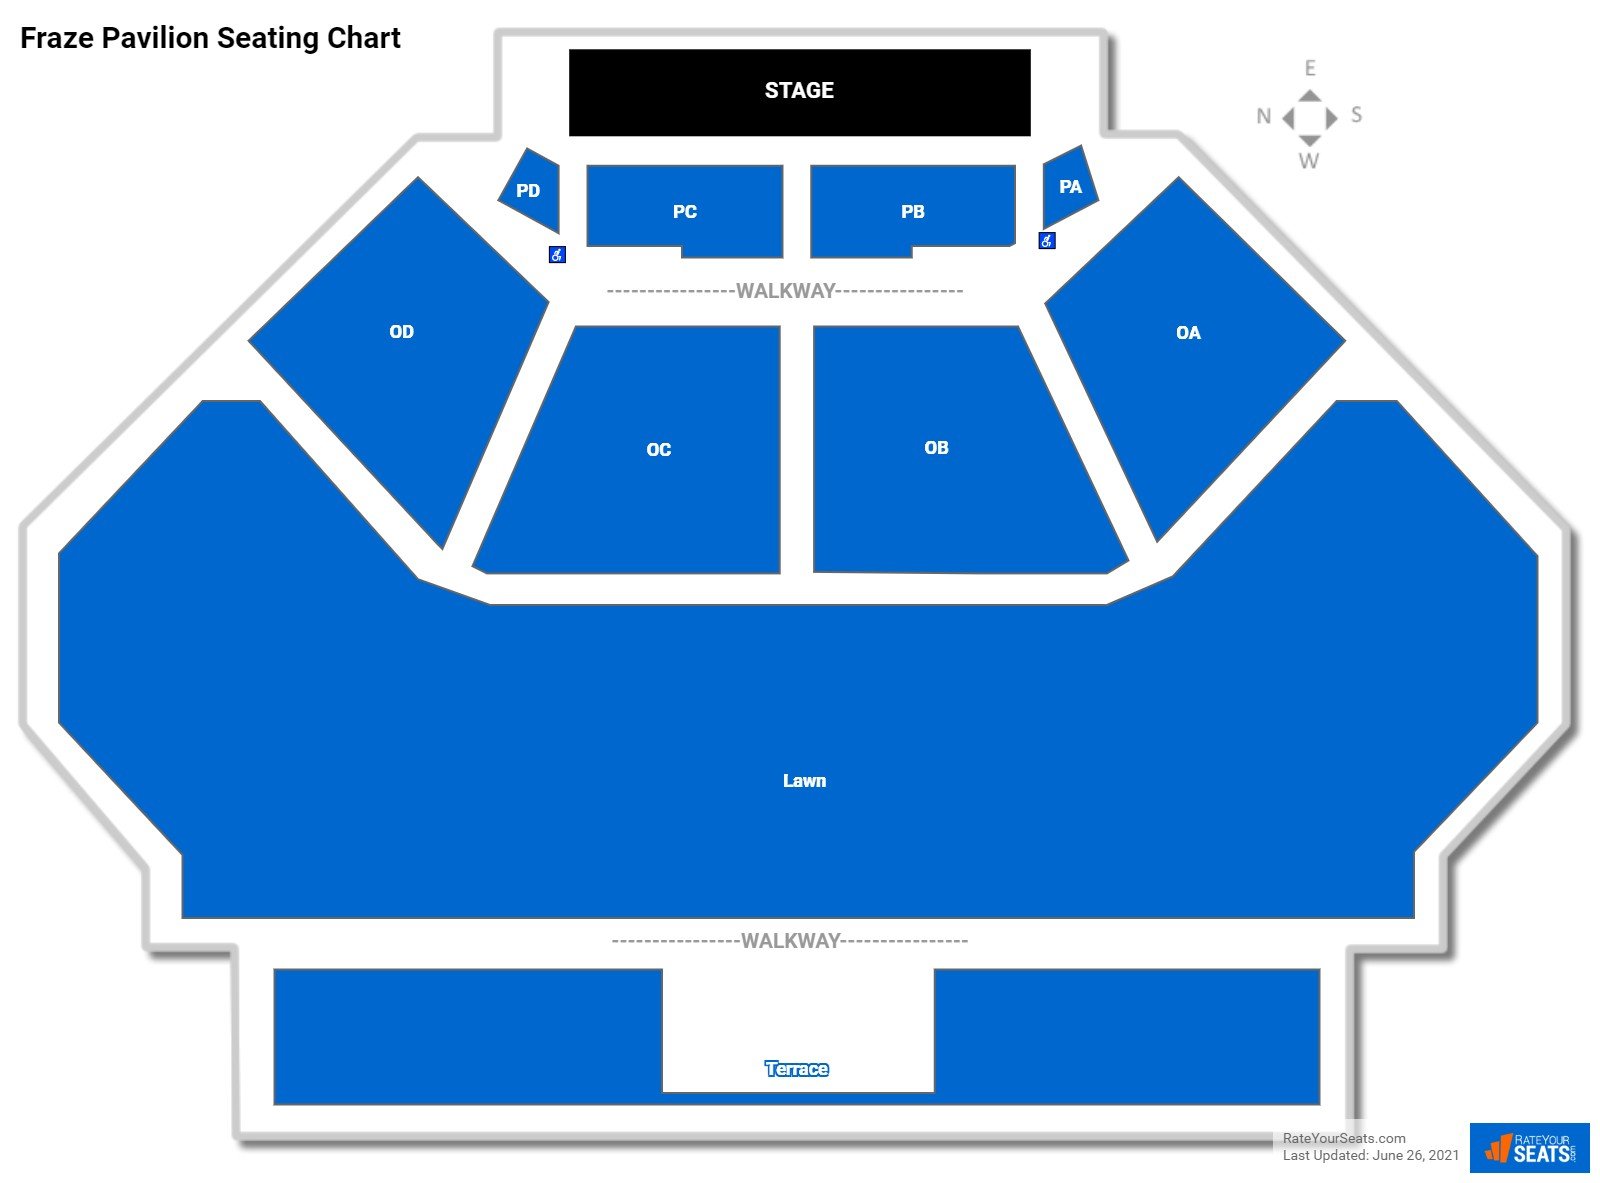 Fraze Pavilion Concert Seating Chart